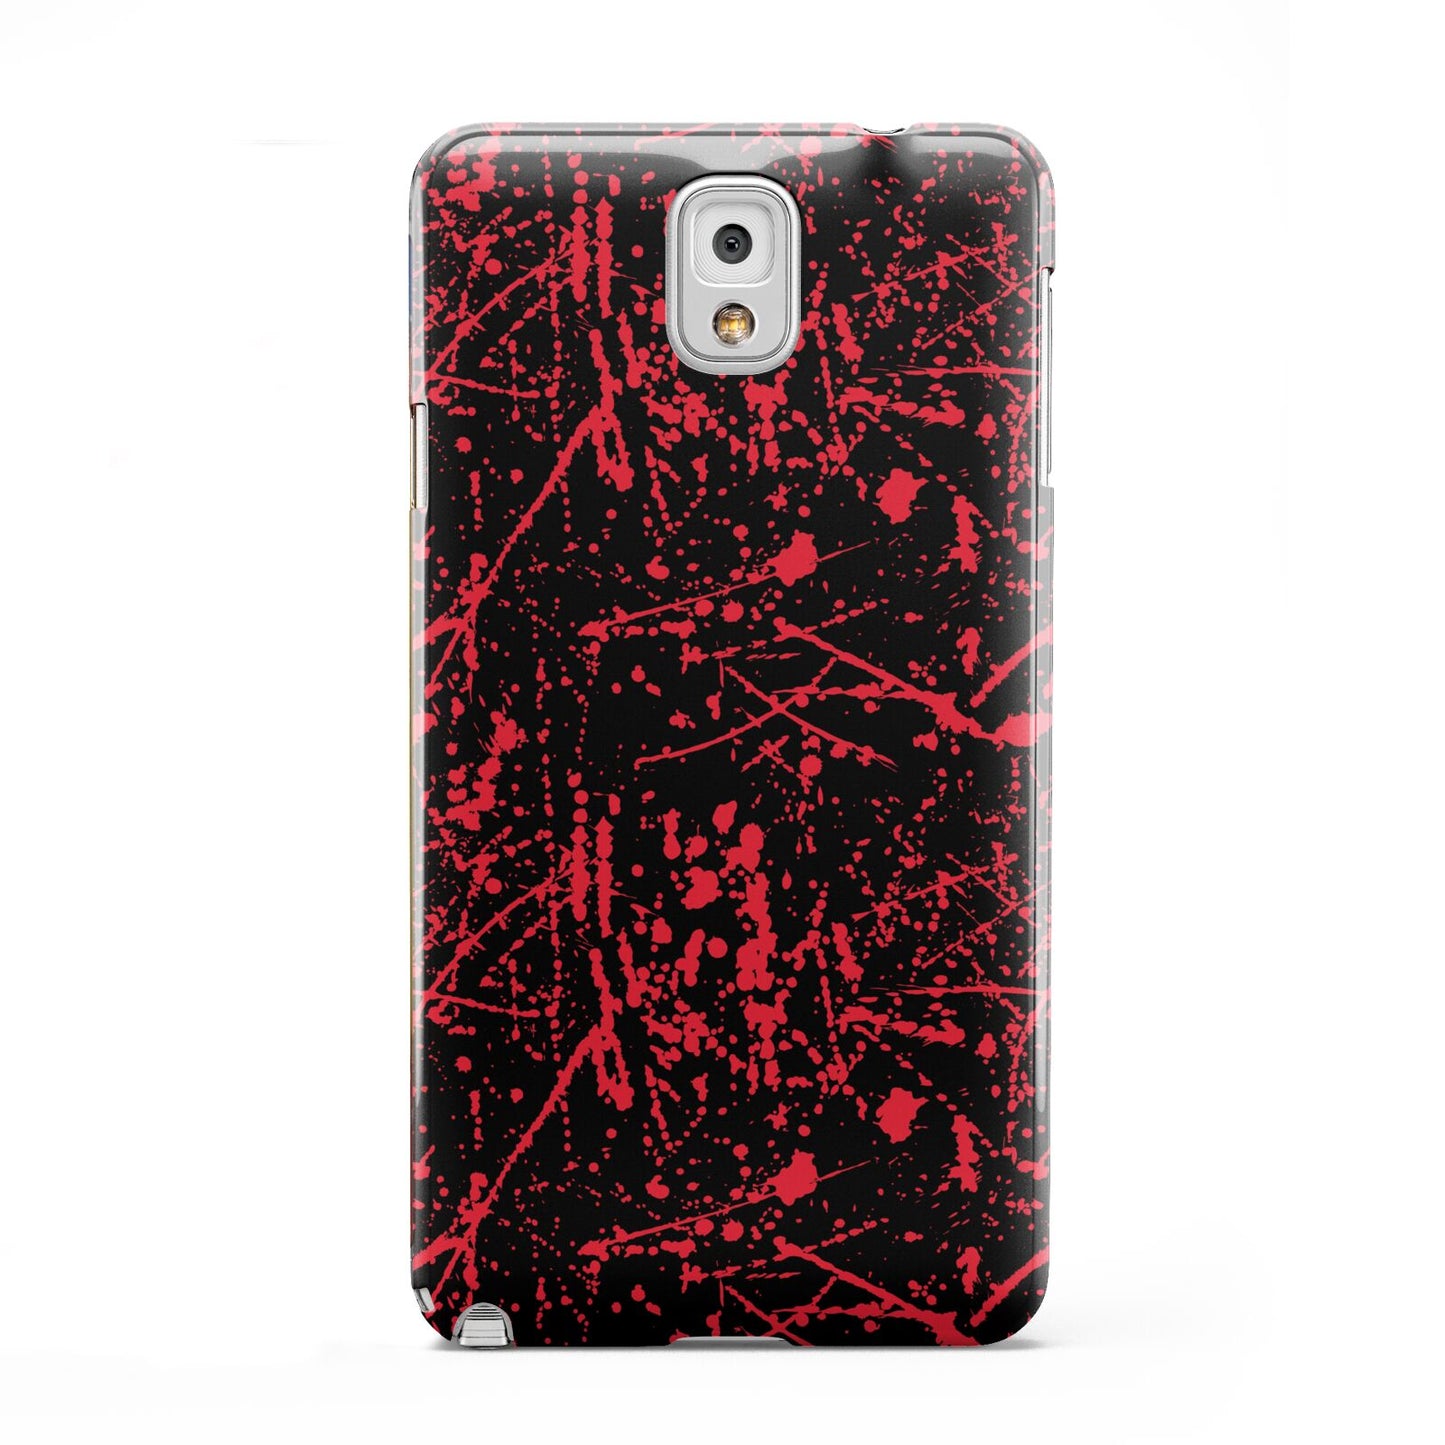 Blood Splatters Samsung Galaxy Note 3 Case